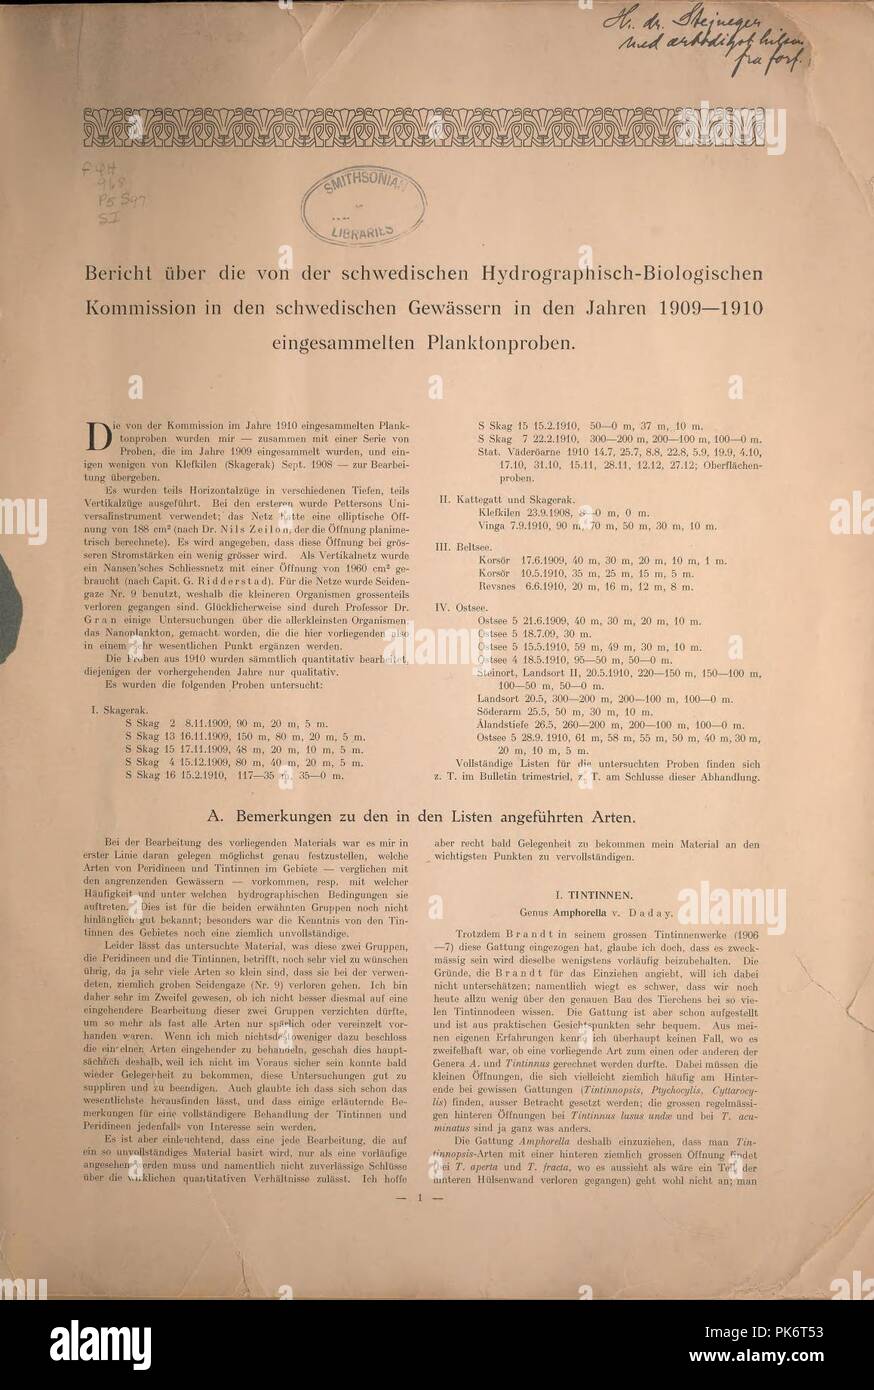 Bericht über die von den schwedischen Hydrographisch-Biologischen Kommission in den schwedischen Gewässern in den Jahren 1909-1910 eingesammelten Planktonproben (Page 1) Stock Photo